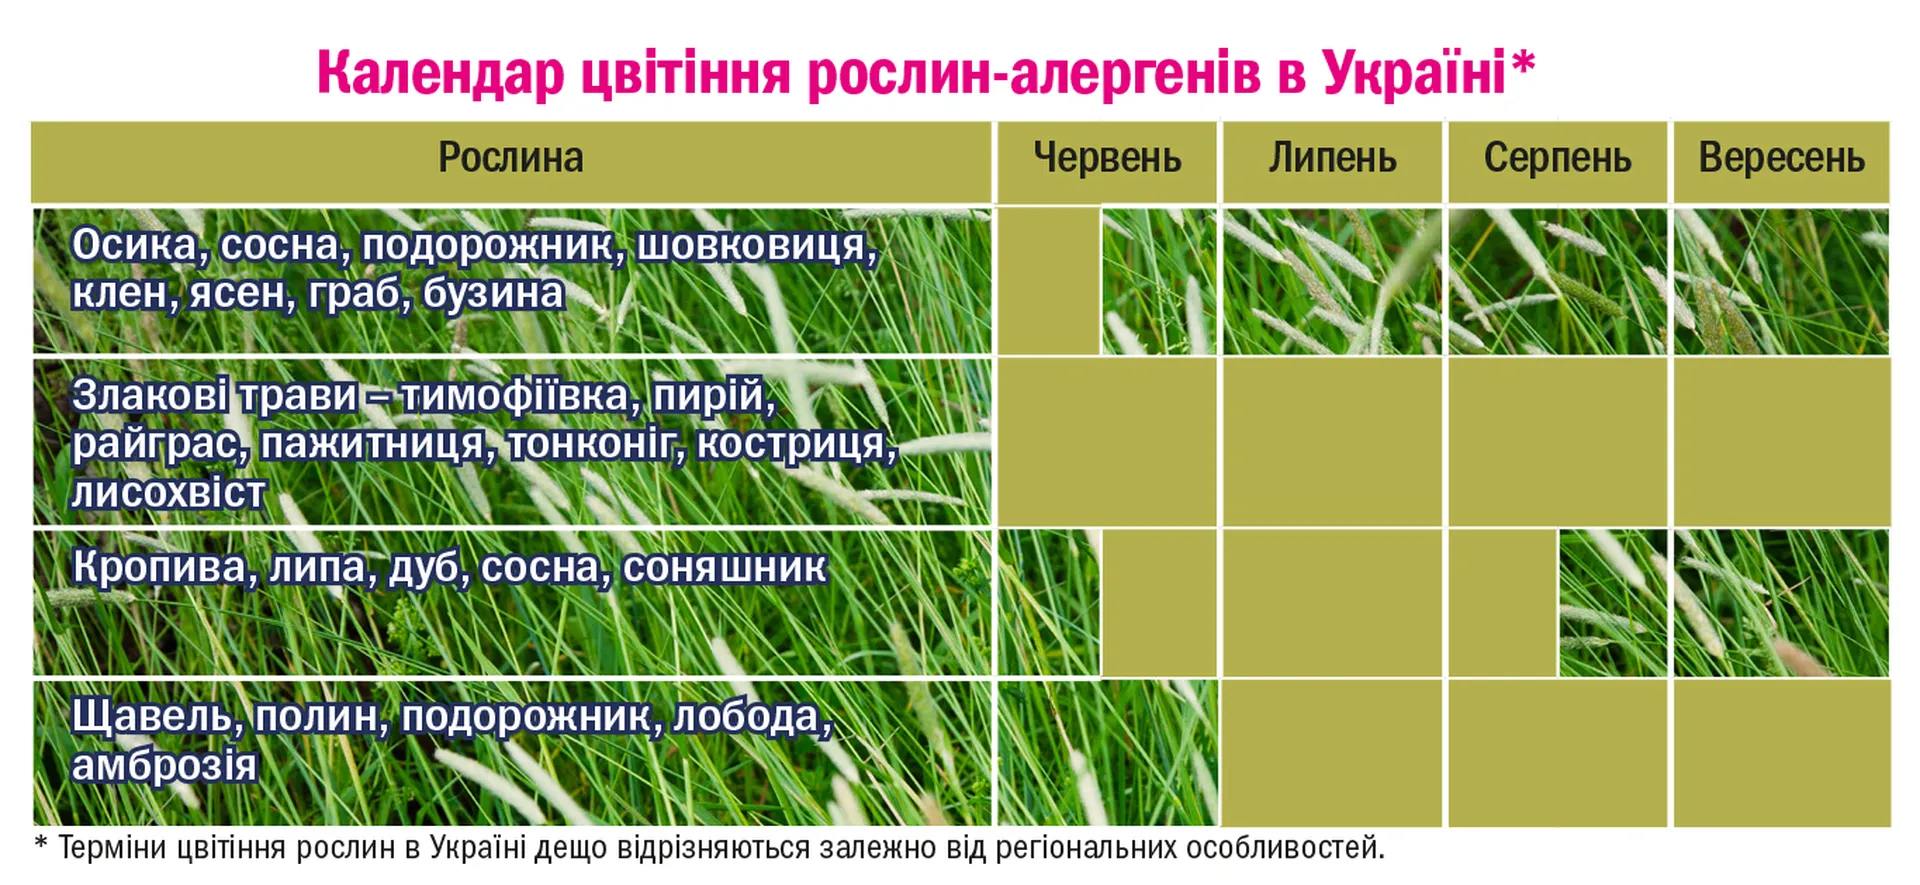 Календар цвітіння рослин-алергенів в Україні